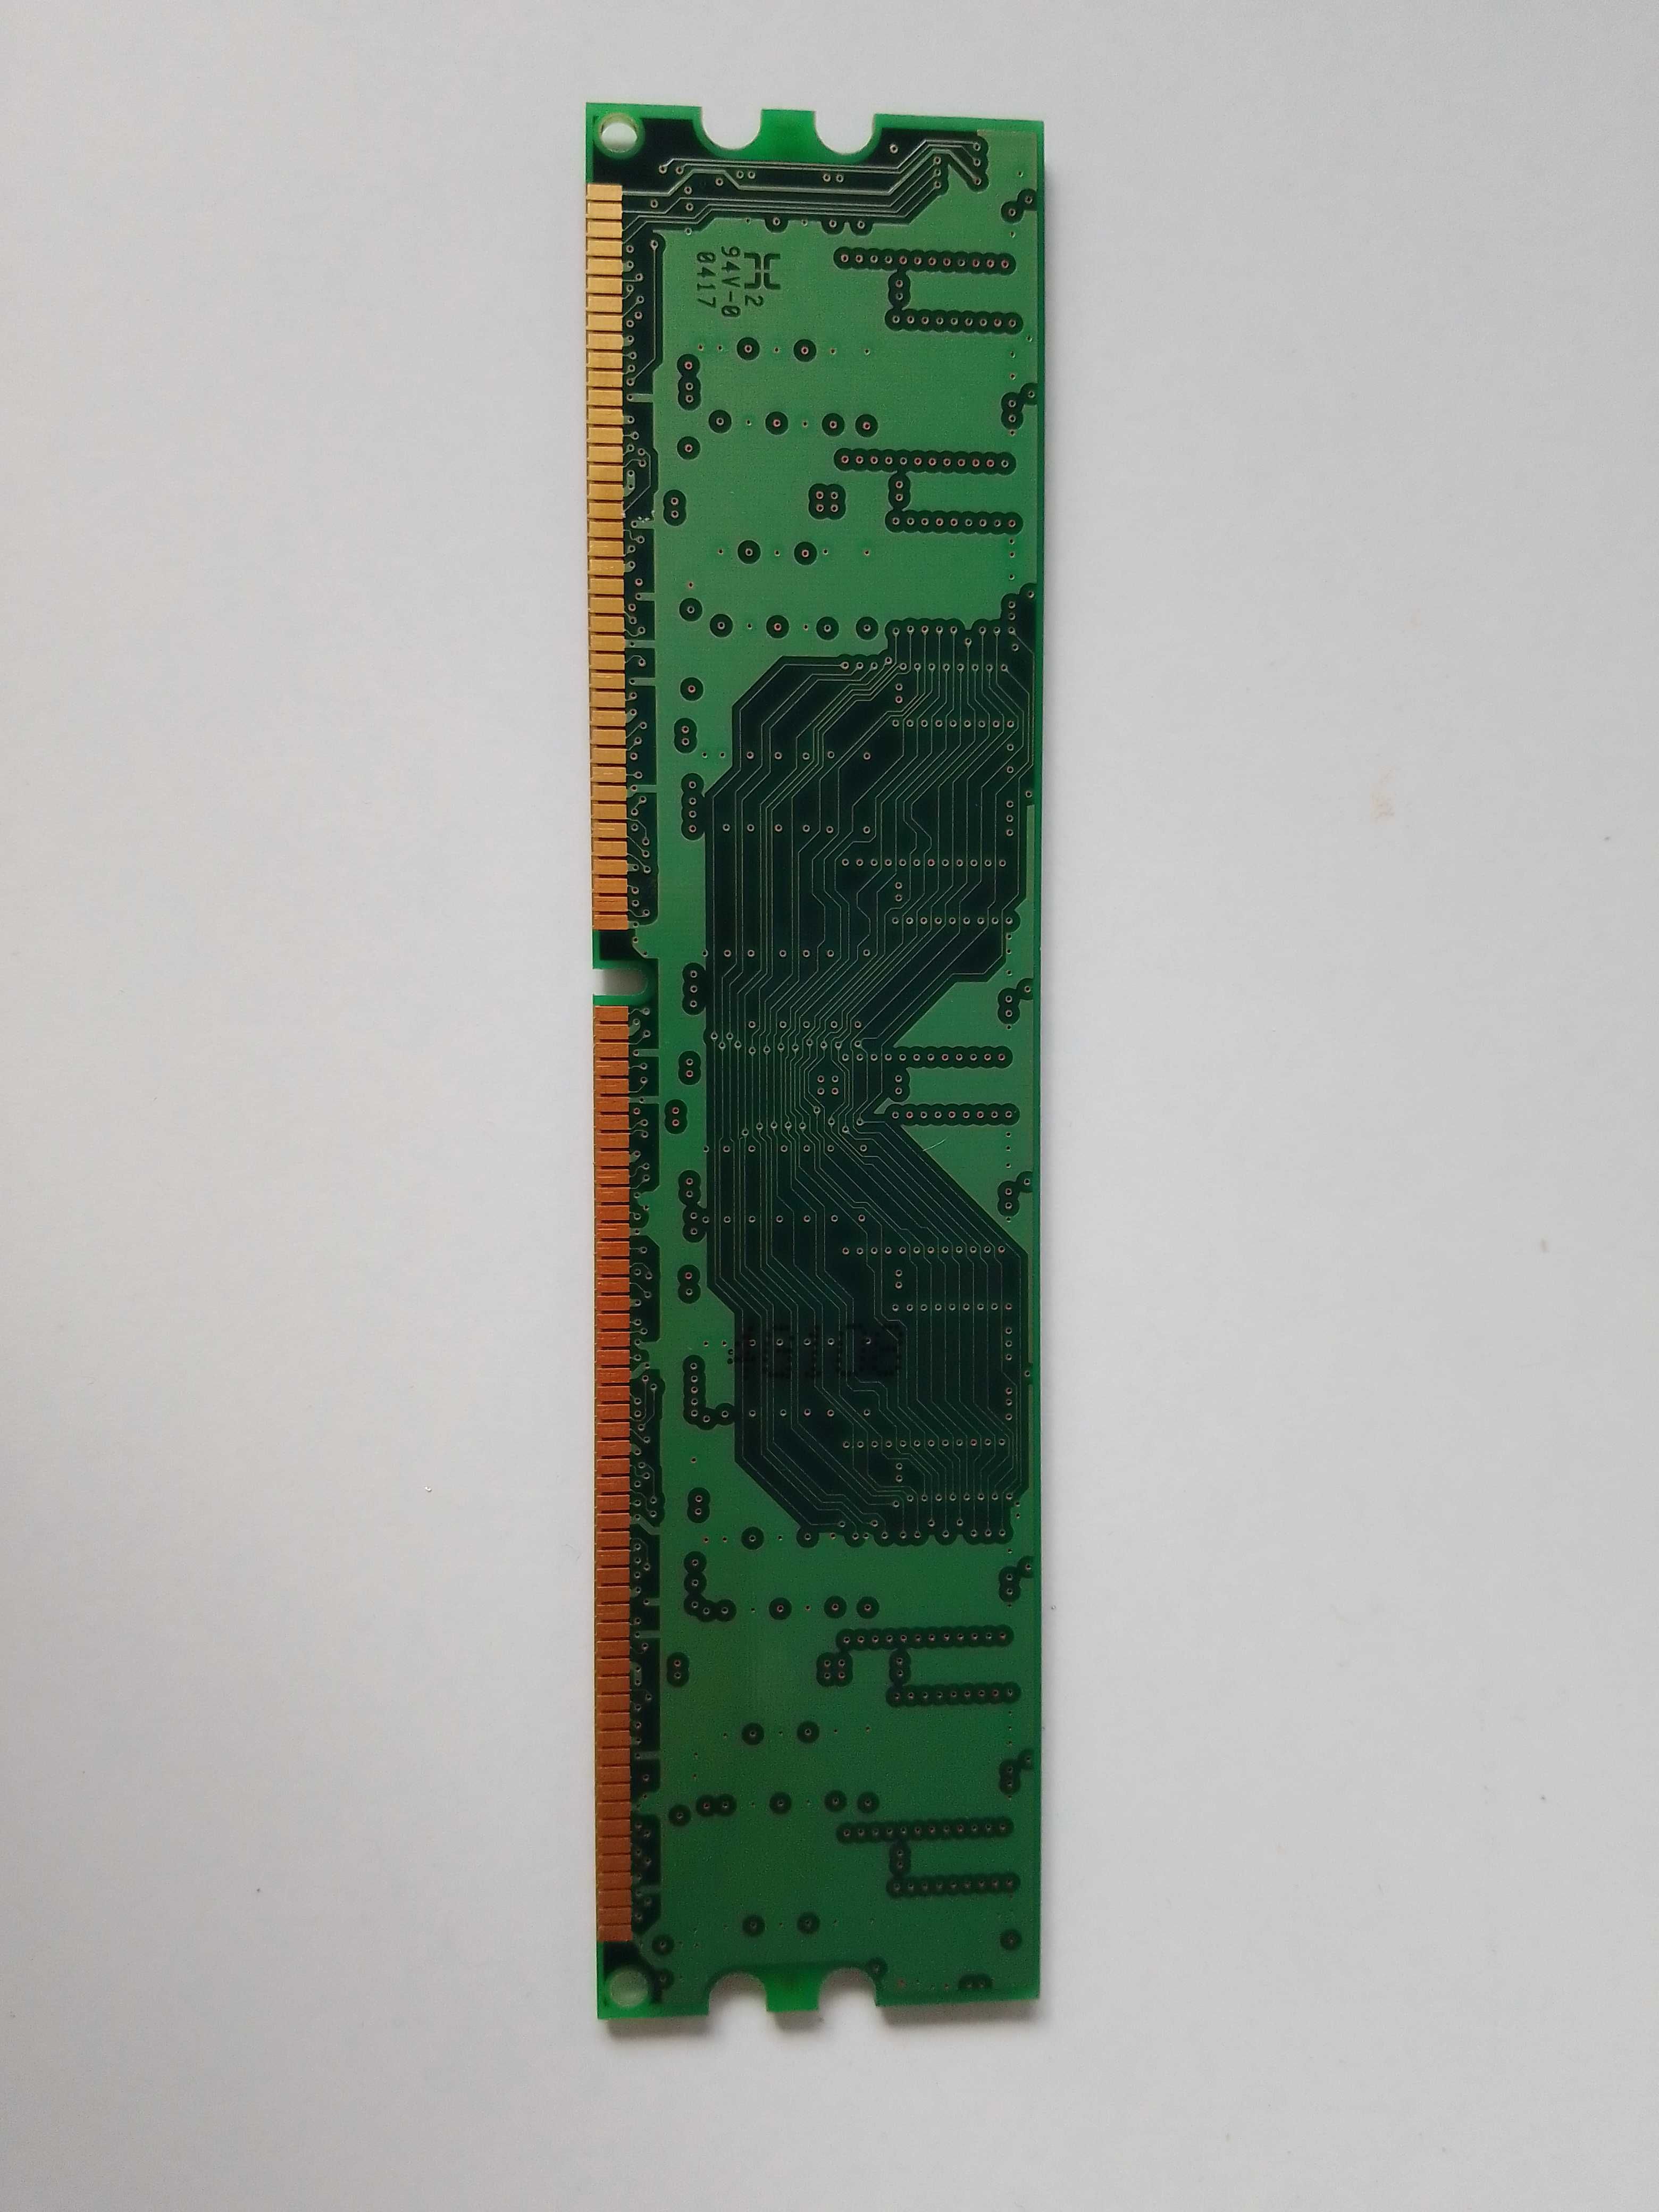 Pamięć RAM DDR Kingston KVR400X64C3A/256 256MB (002604)